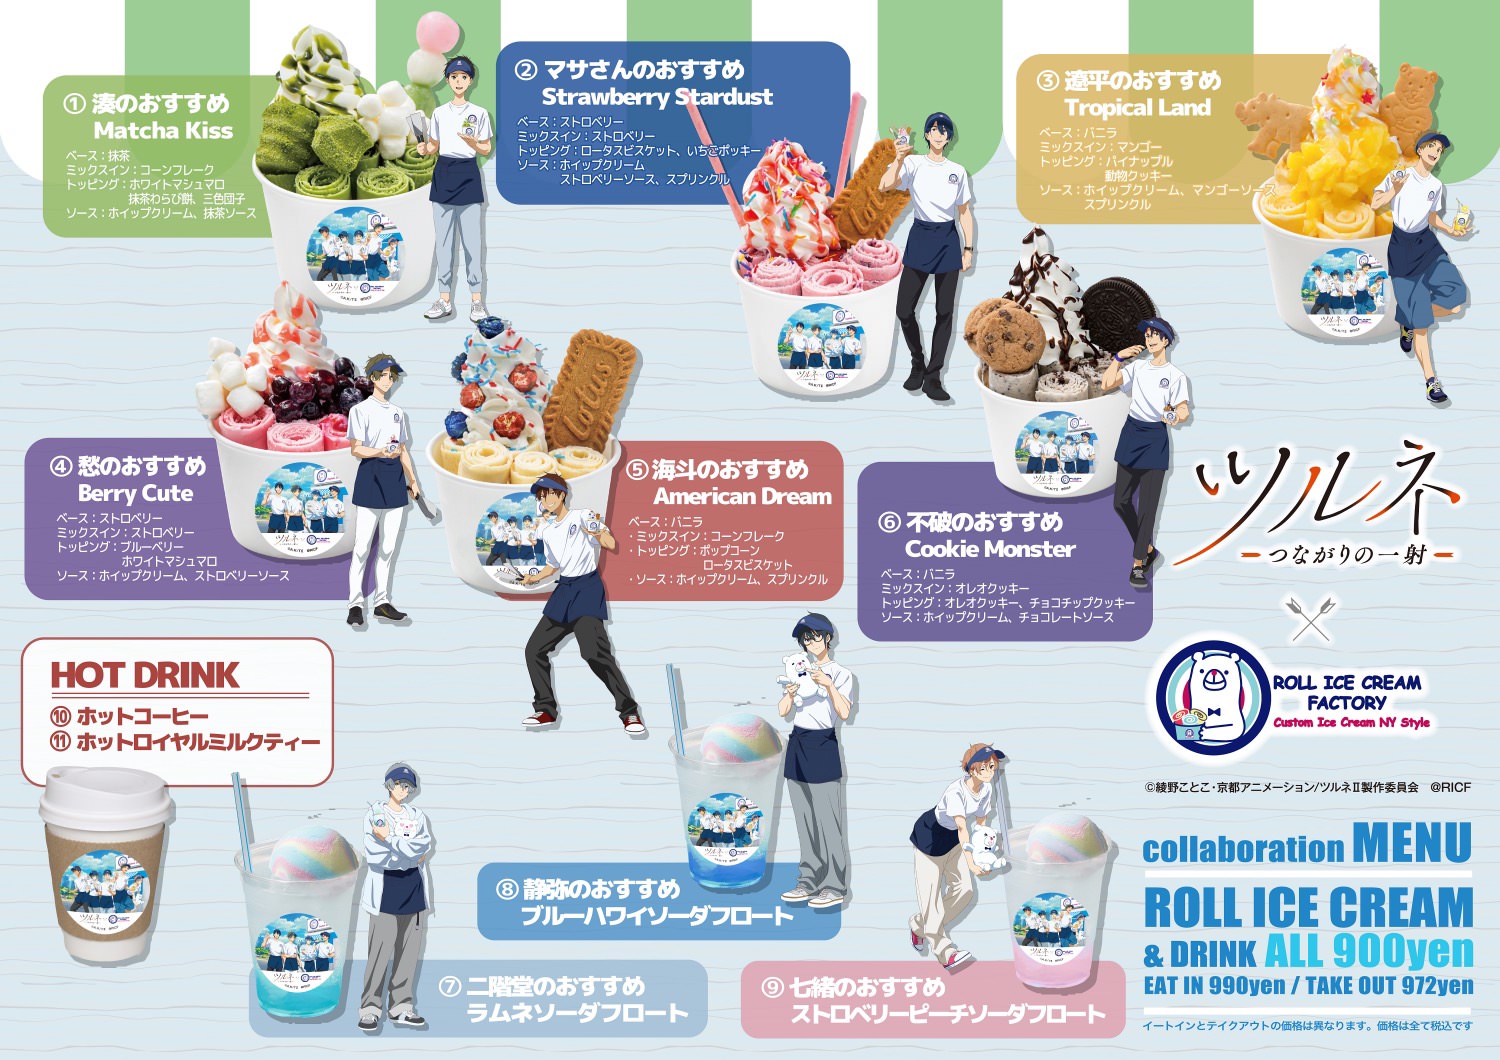 ツルネ × ロールアイスクリーム6店舗 9月30日より描き下ろしコラボ開催!